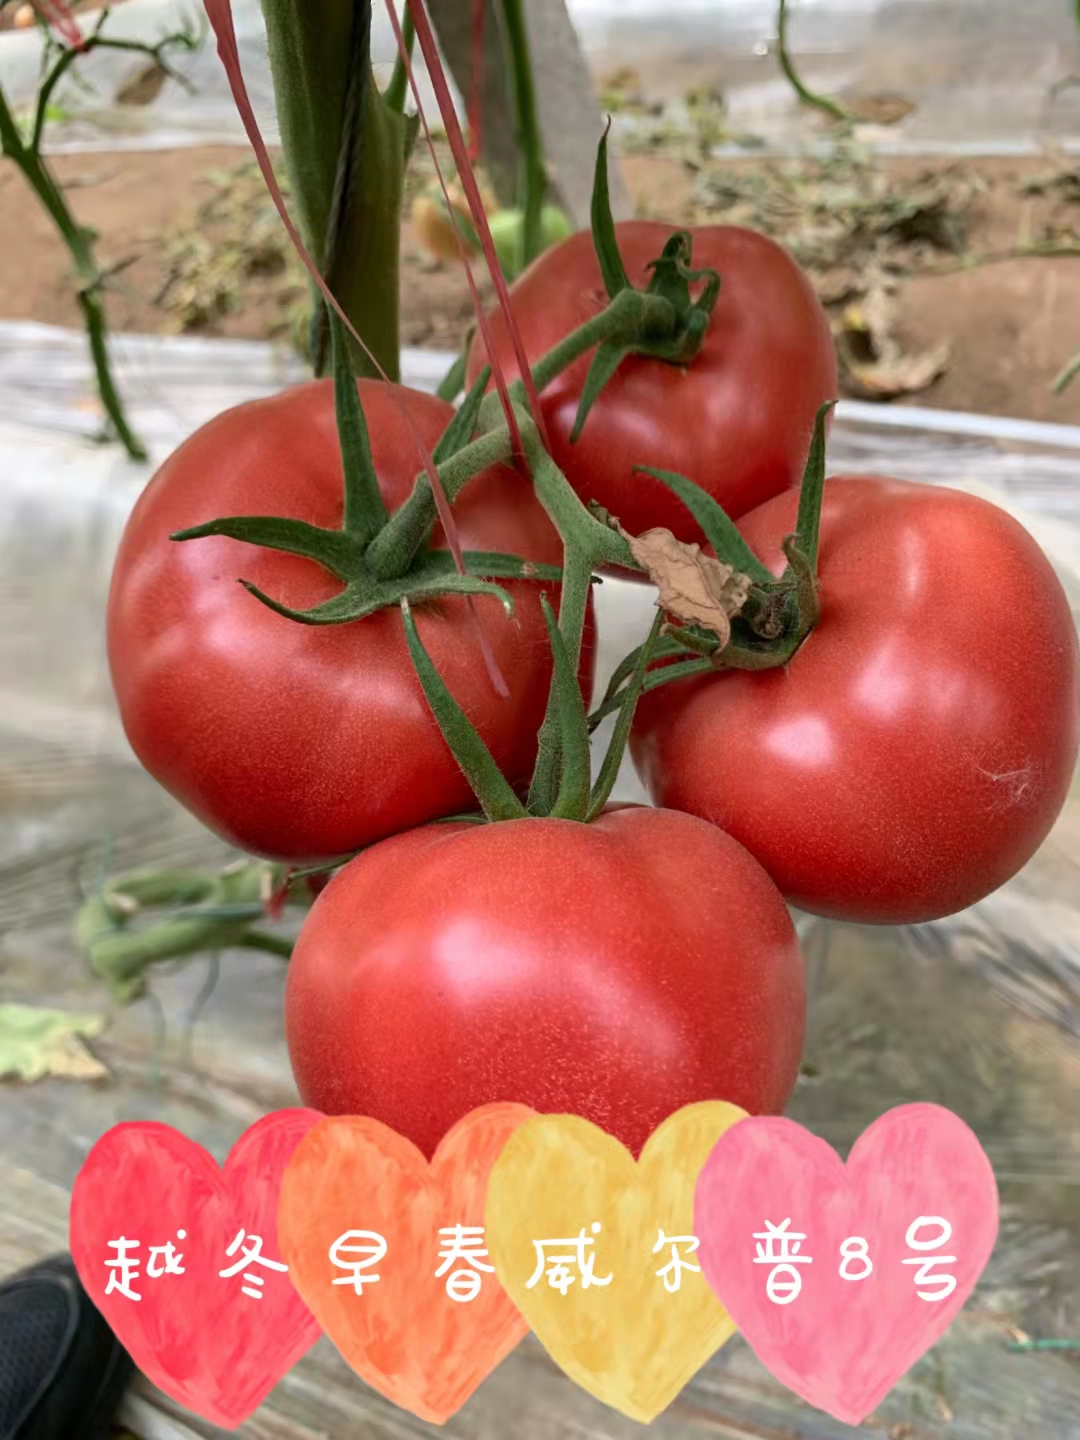 山东青岛威尔普8号番茄种子批发公司销售价格 威尔普8号种子